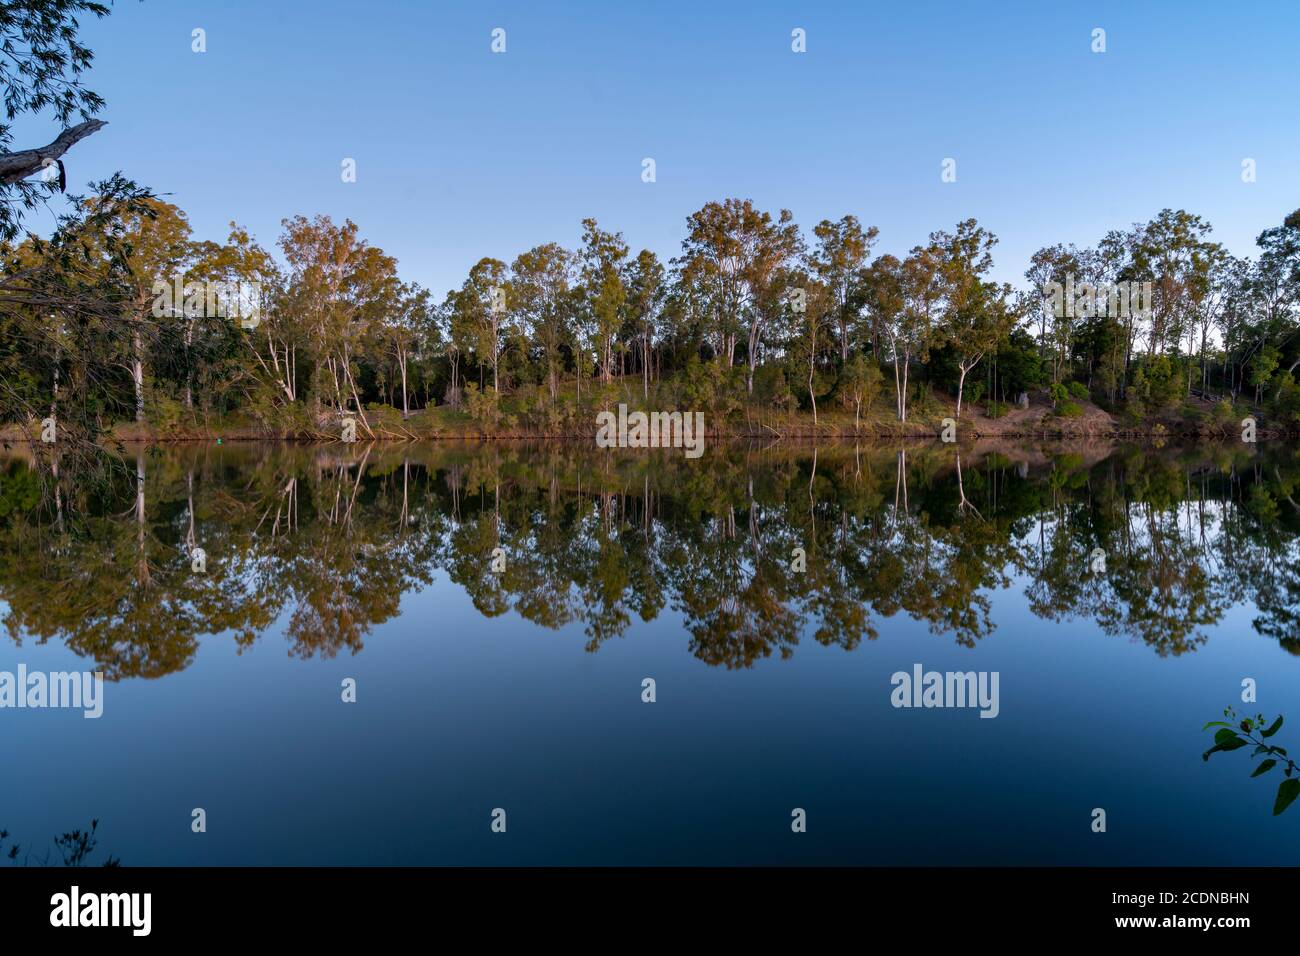 Refléter les réflexions de l'image sur Mary River près de Maryborough Queensland, Australie Banque D'Images